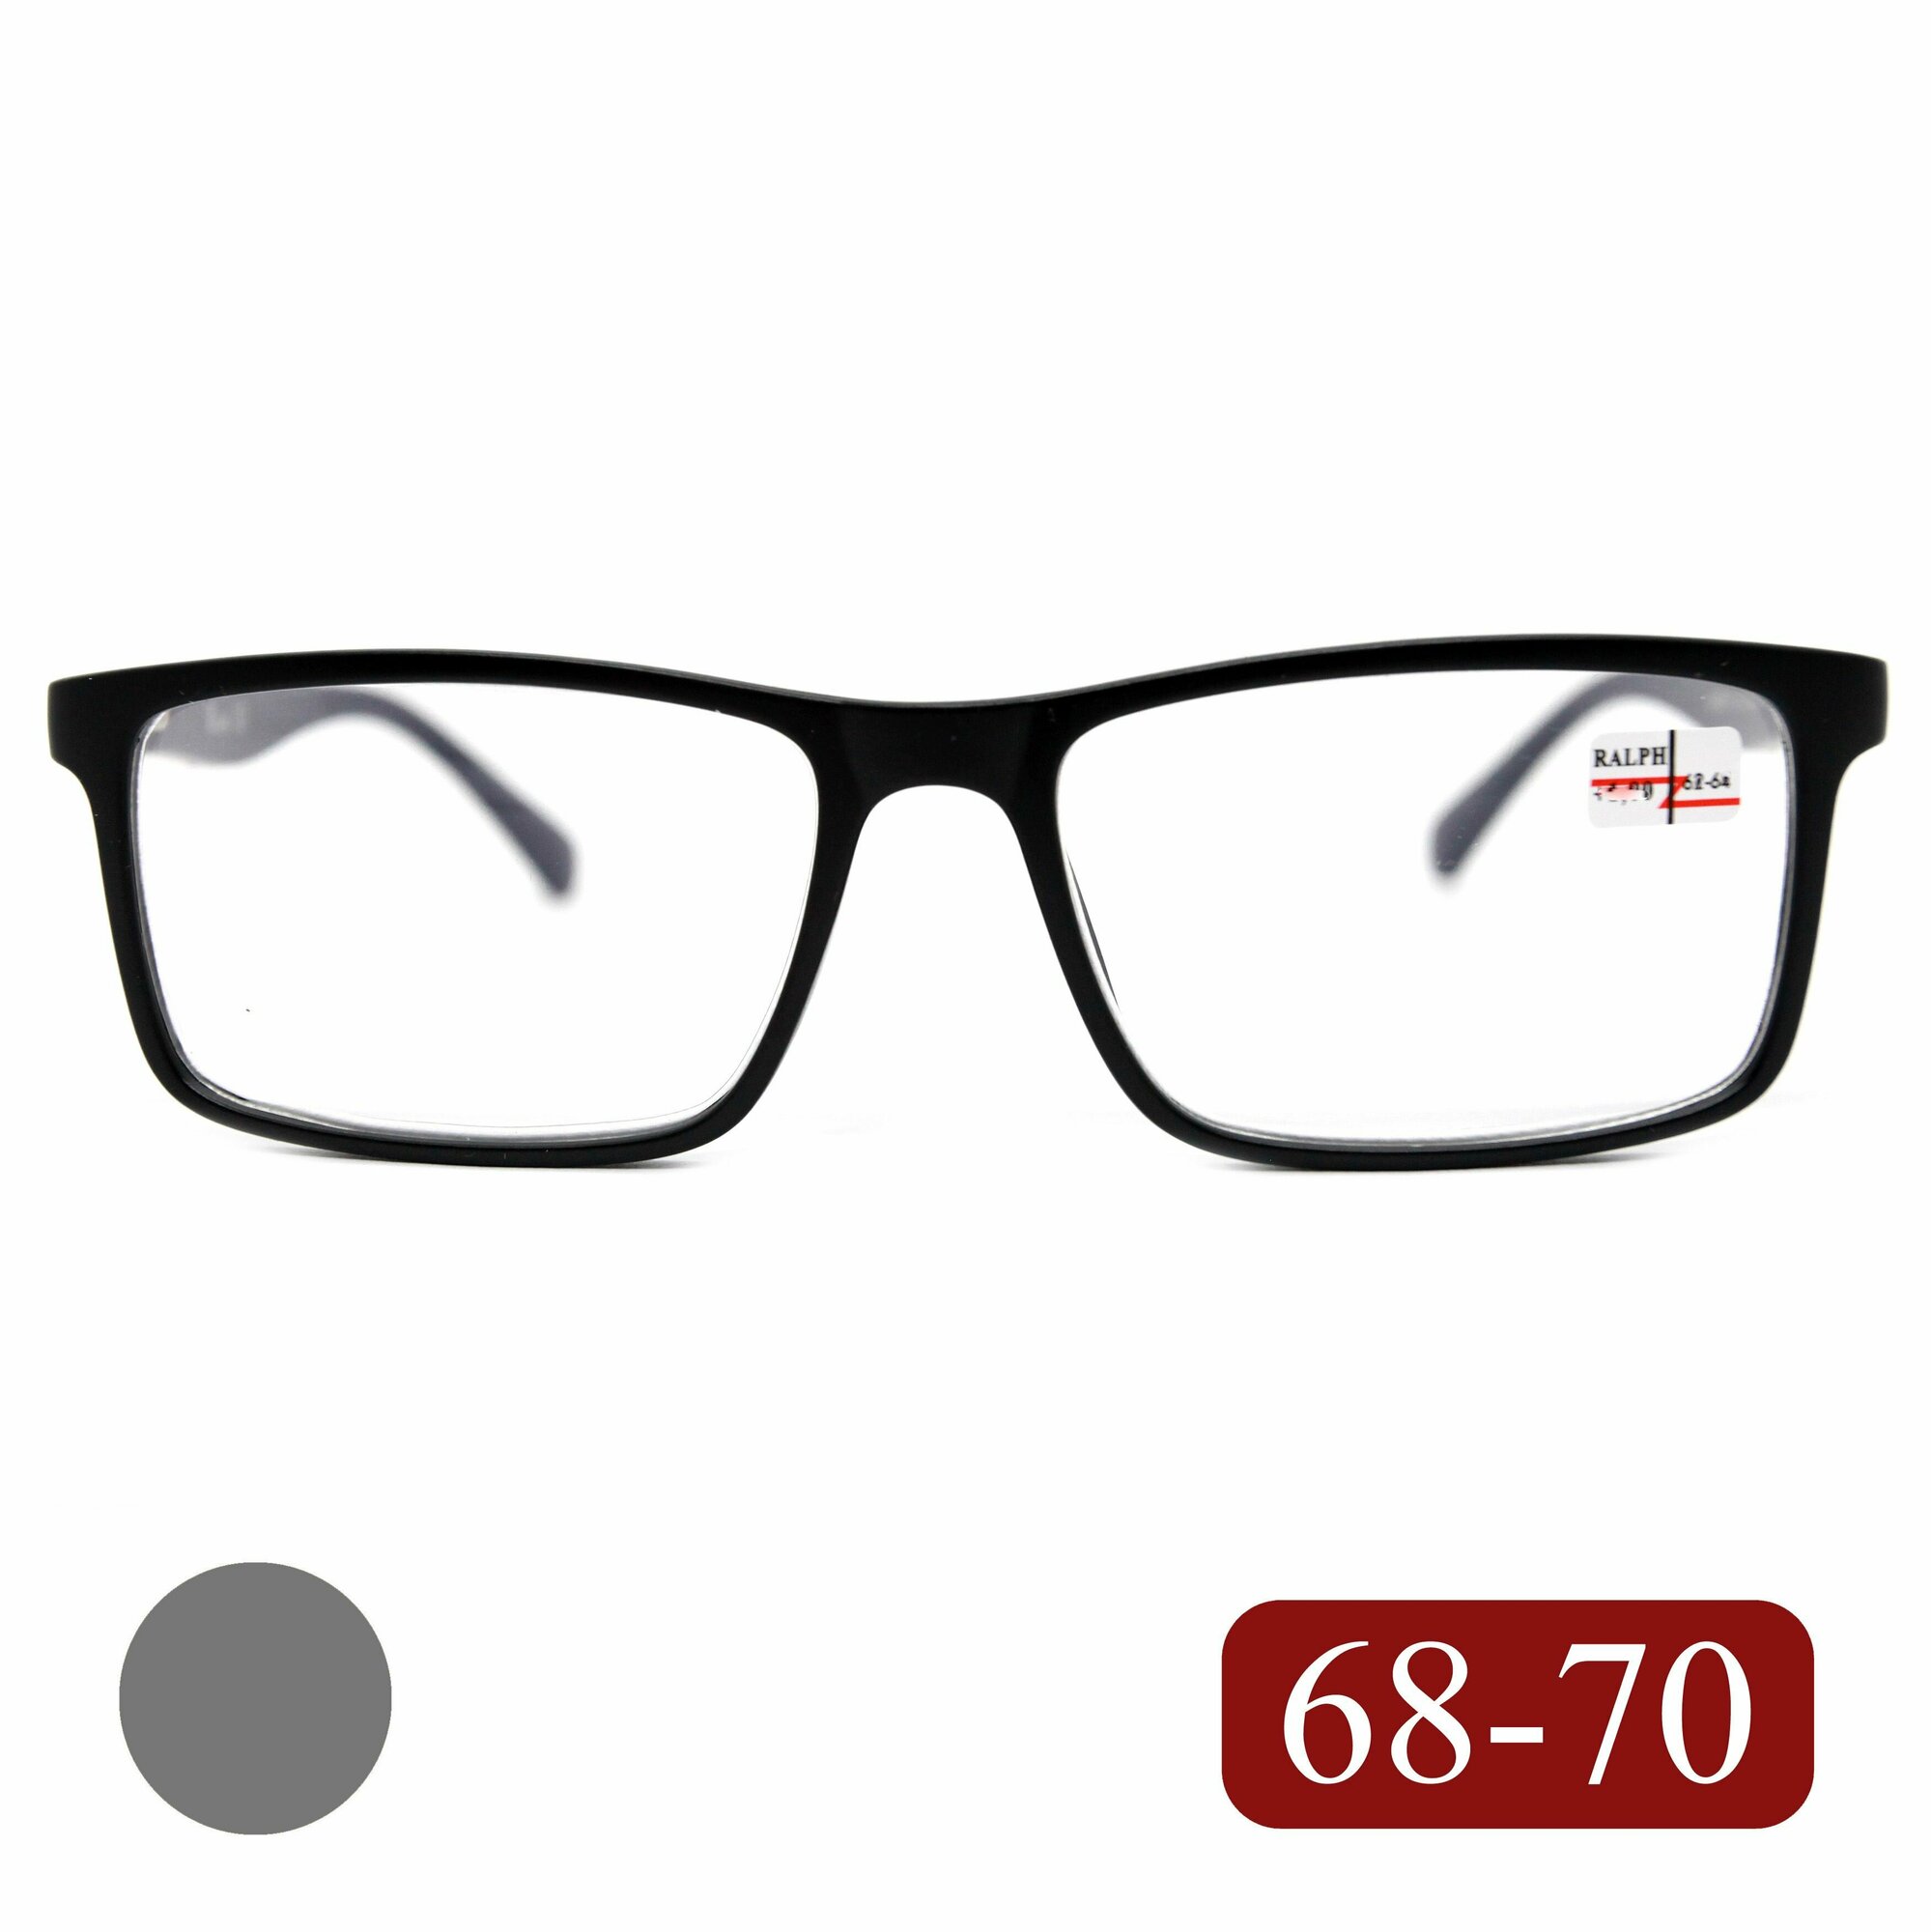 Очки с диоптриями мужские 68-70 (-1.50) RALPH 0682 C1, без футляра, цвет черный-матовый, для дали, линзы пластик, РЦ 68-70